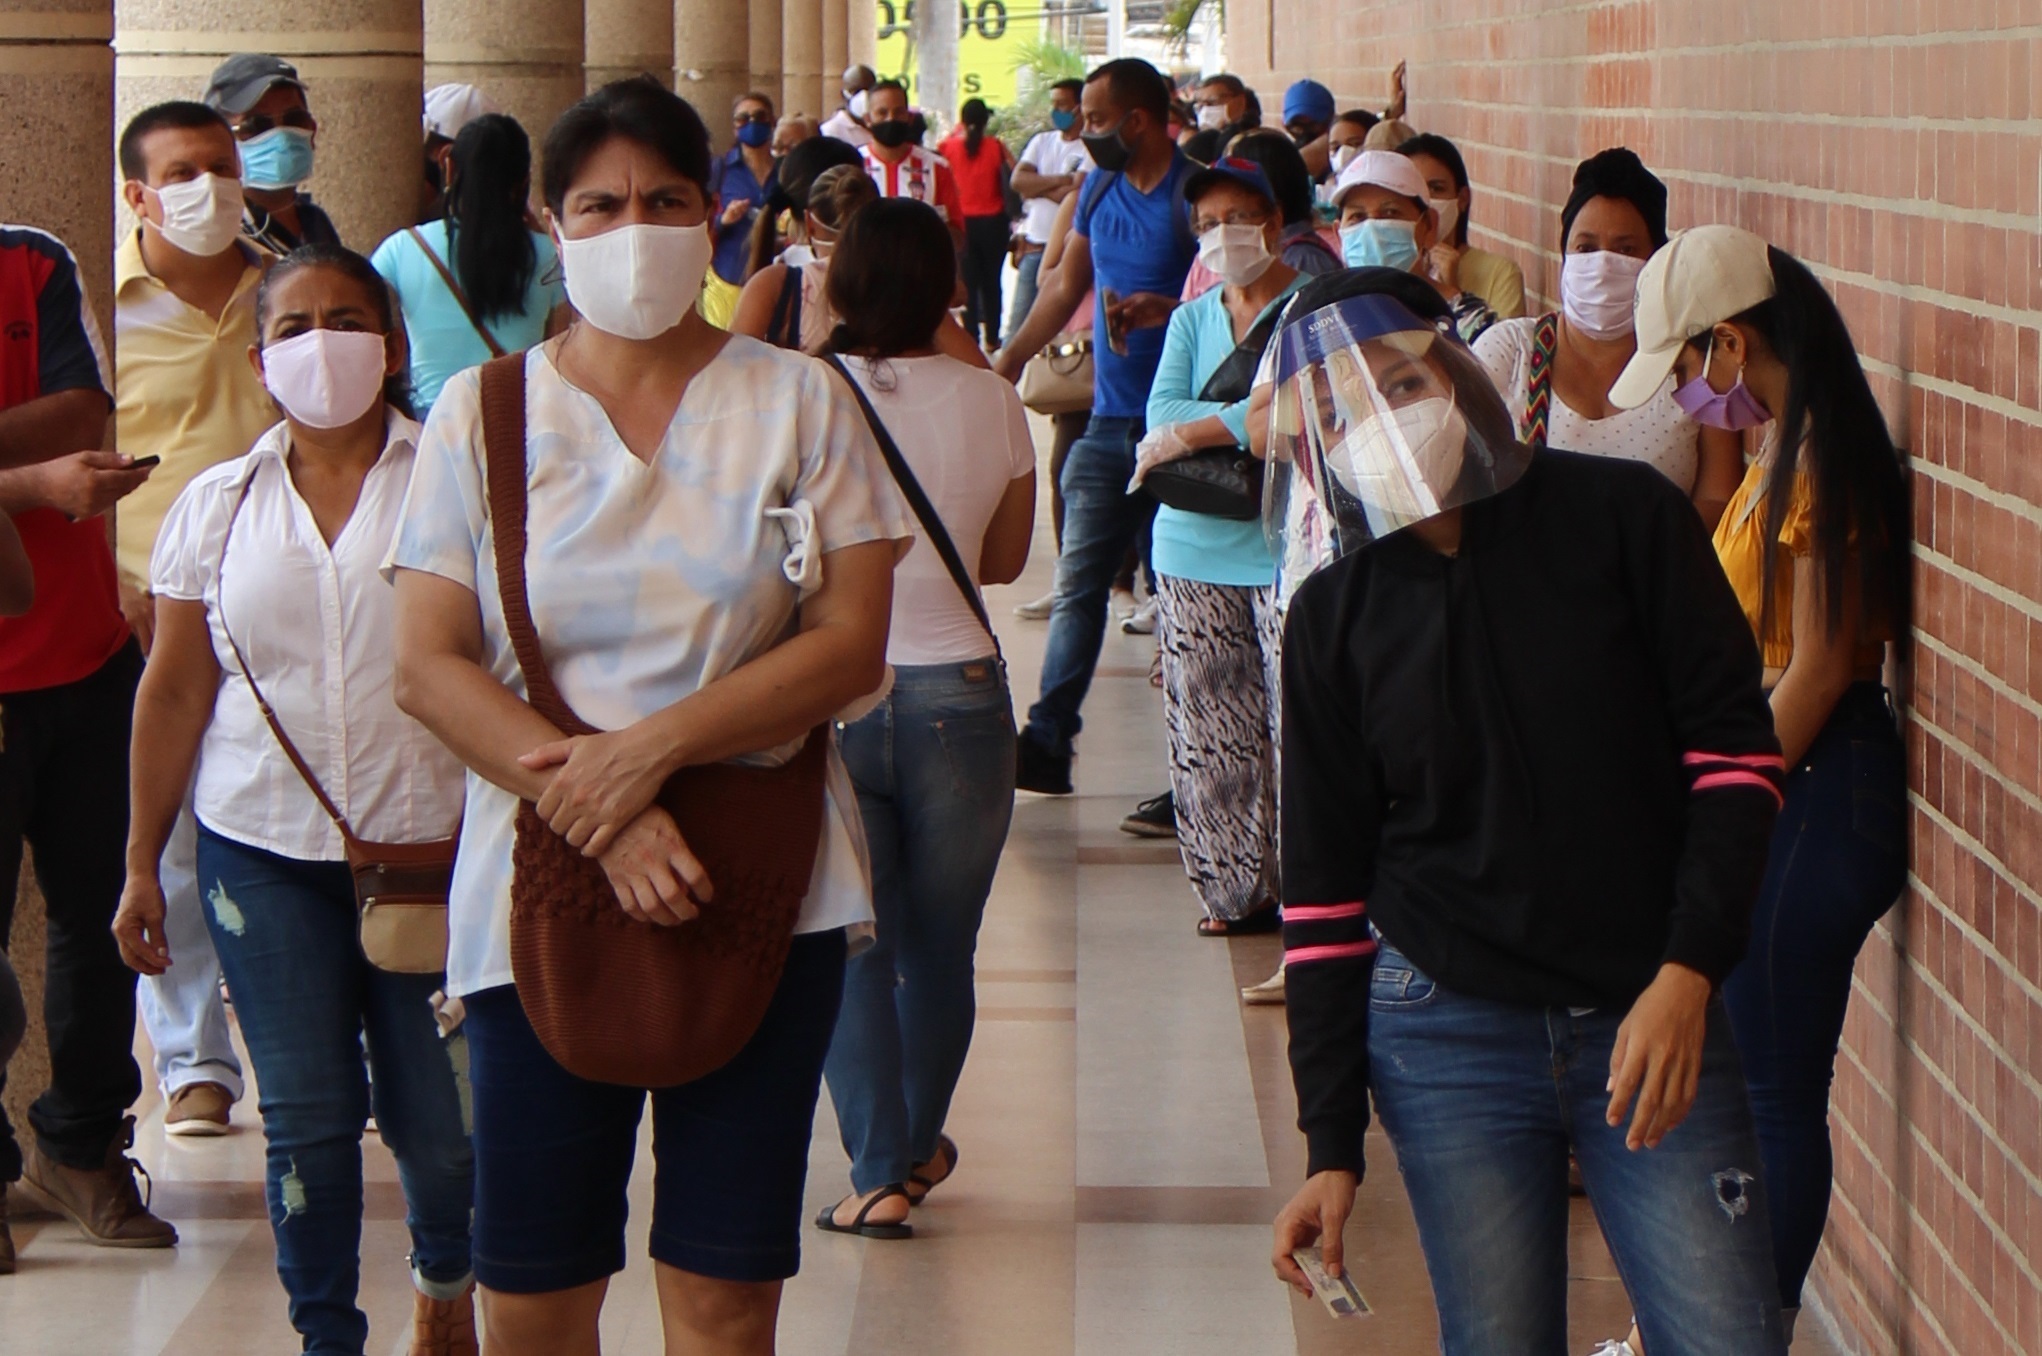 Fotografía fechada el 18 de junio del 2020 que muestra unas personas aglomeradas en Barranquilla (Colombia), una ciudad que con su vecina Cartagena suman los más altos índices de contagios y muertes por COVID-19 en la región caribe colombiana (EFE/Ricardo Maldonado Rozo)
